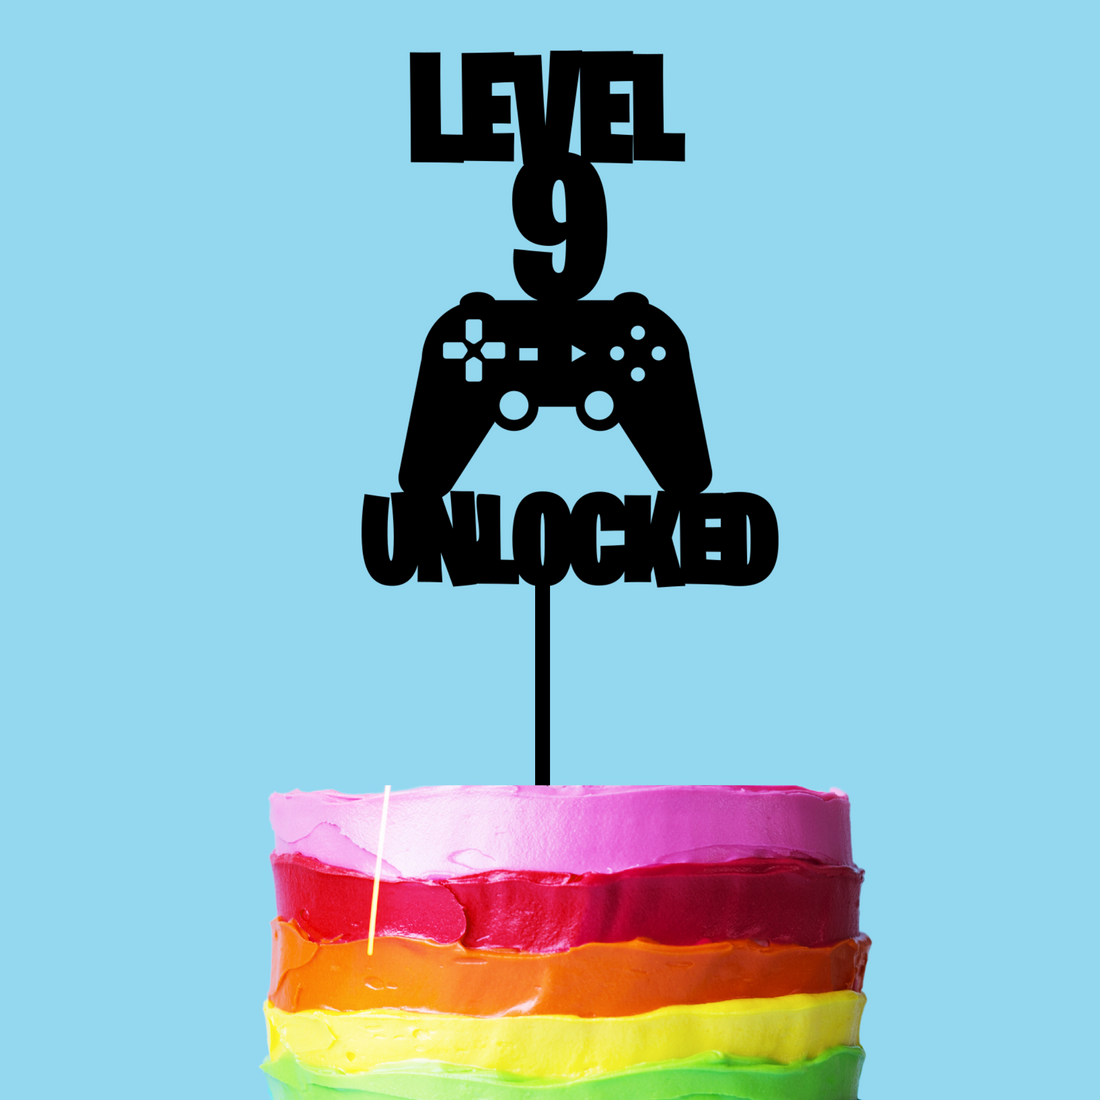 level 9 unlocked gaming cake topper